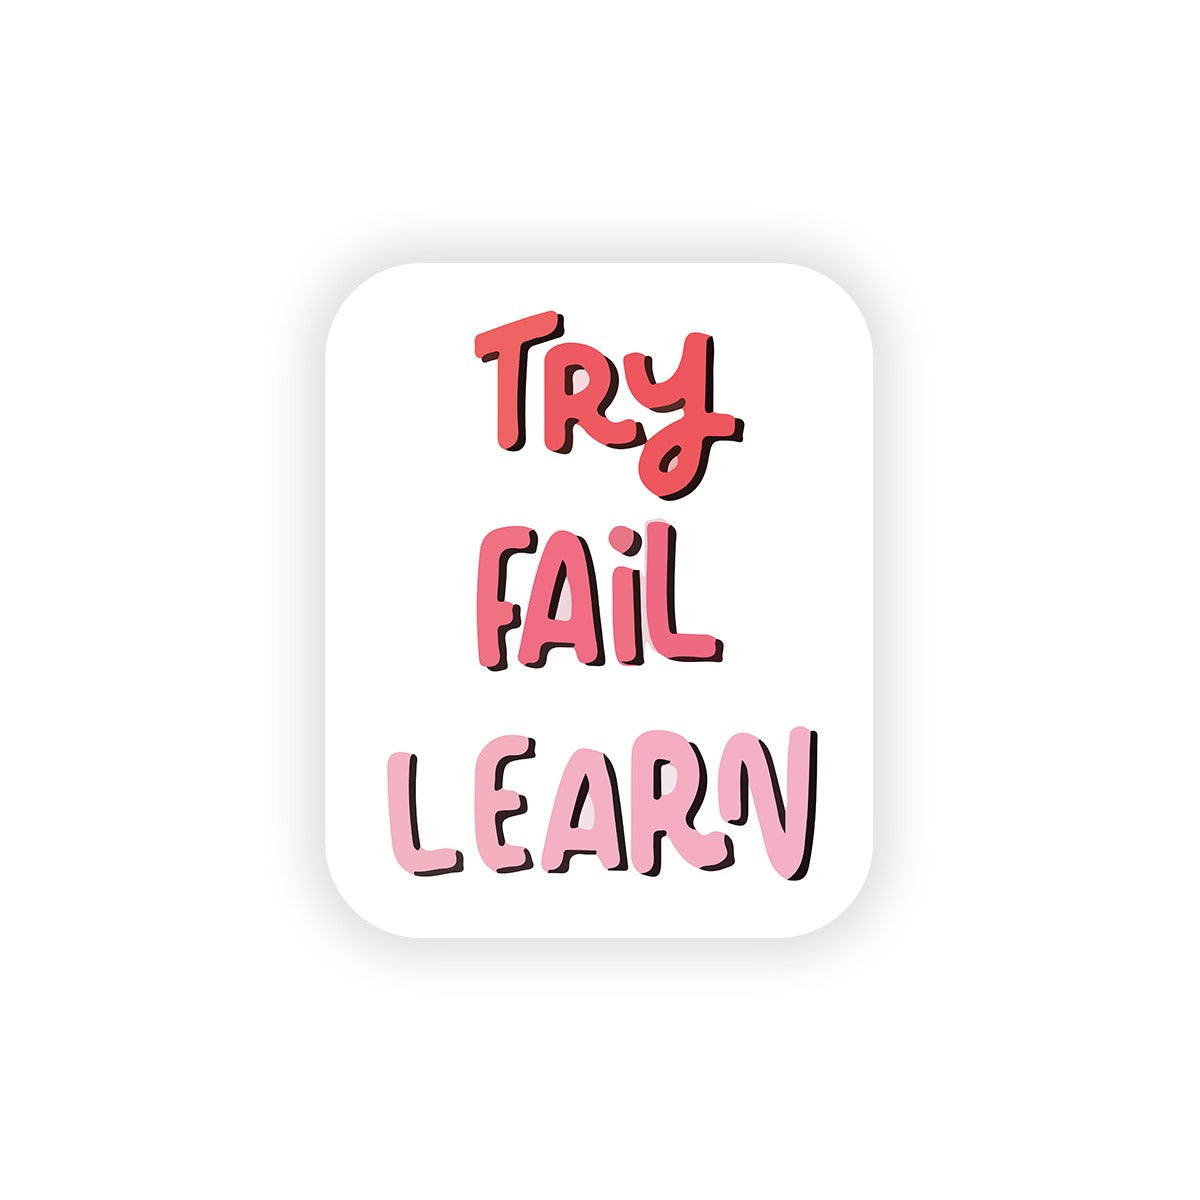 Try fail learn